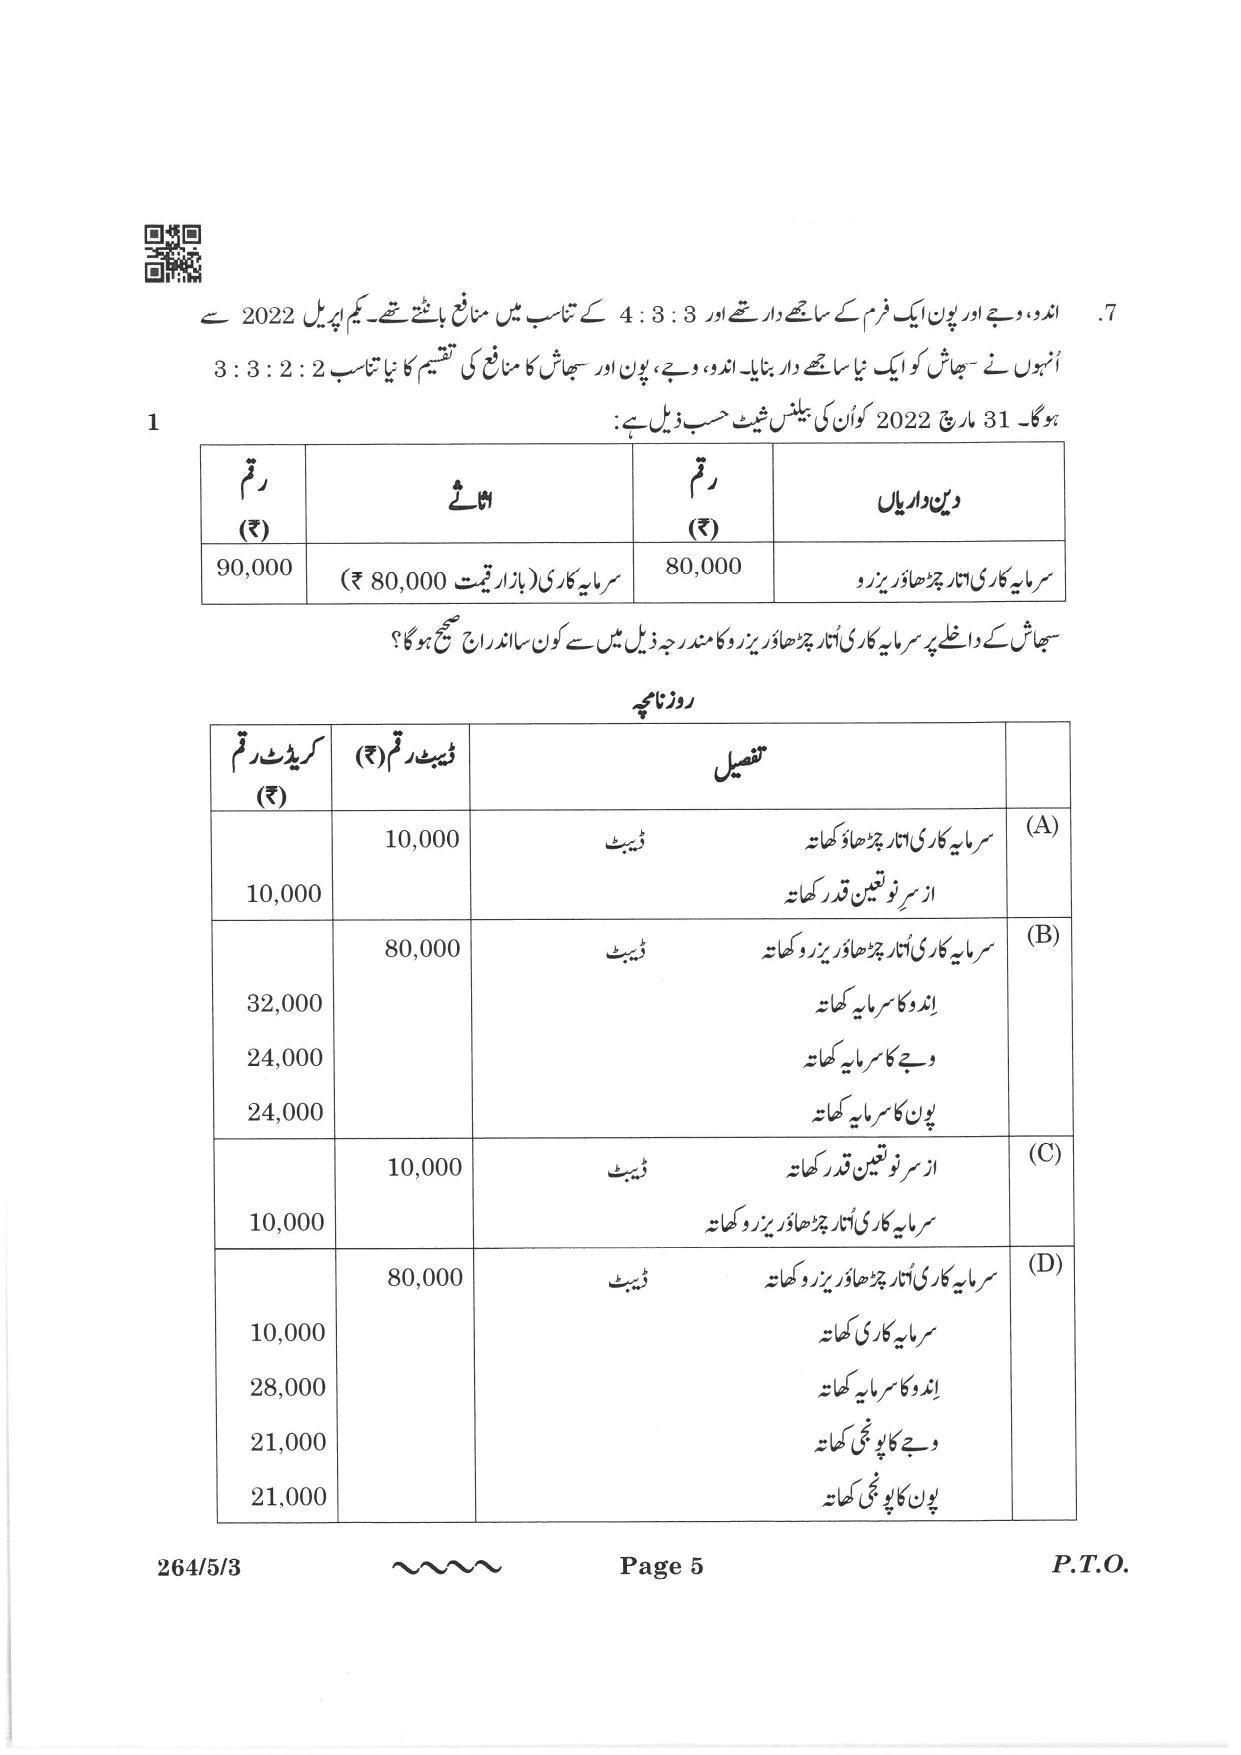 CBSE Class 12 264-5-3 Accountancy Urdu Version 2023 Question Paper - Page 5